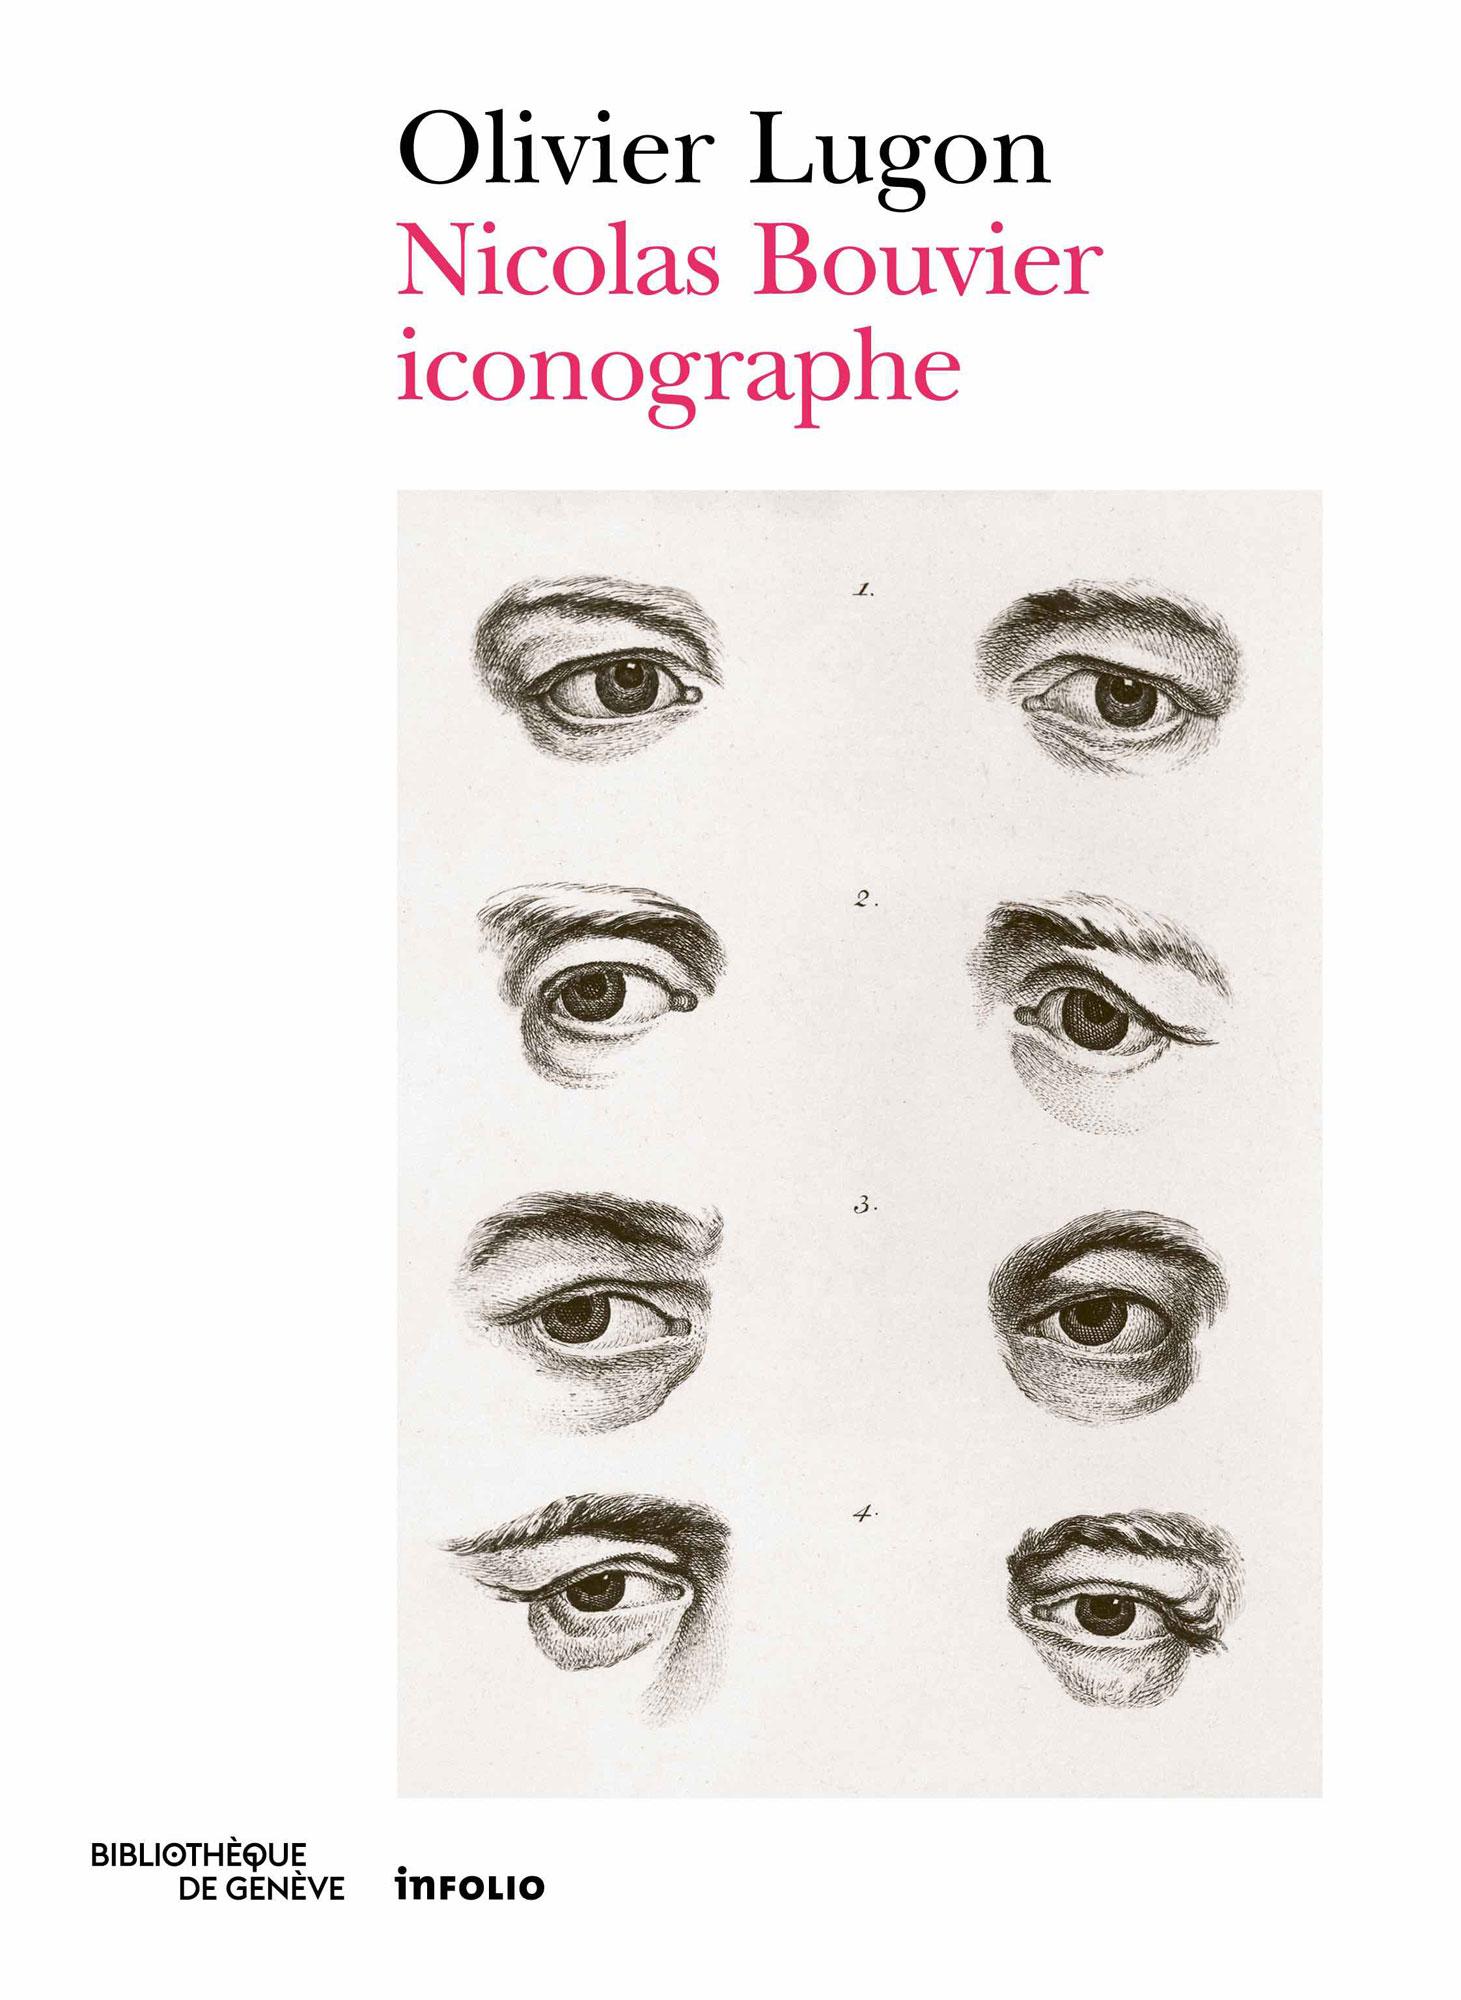 La couverture du livre "Nicolas Bouvier iconographe". [Bibliothèque de Genève/Gollion, Infolio, 2019]